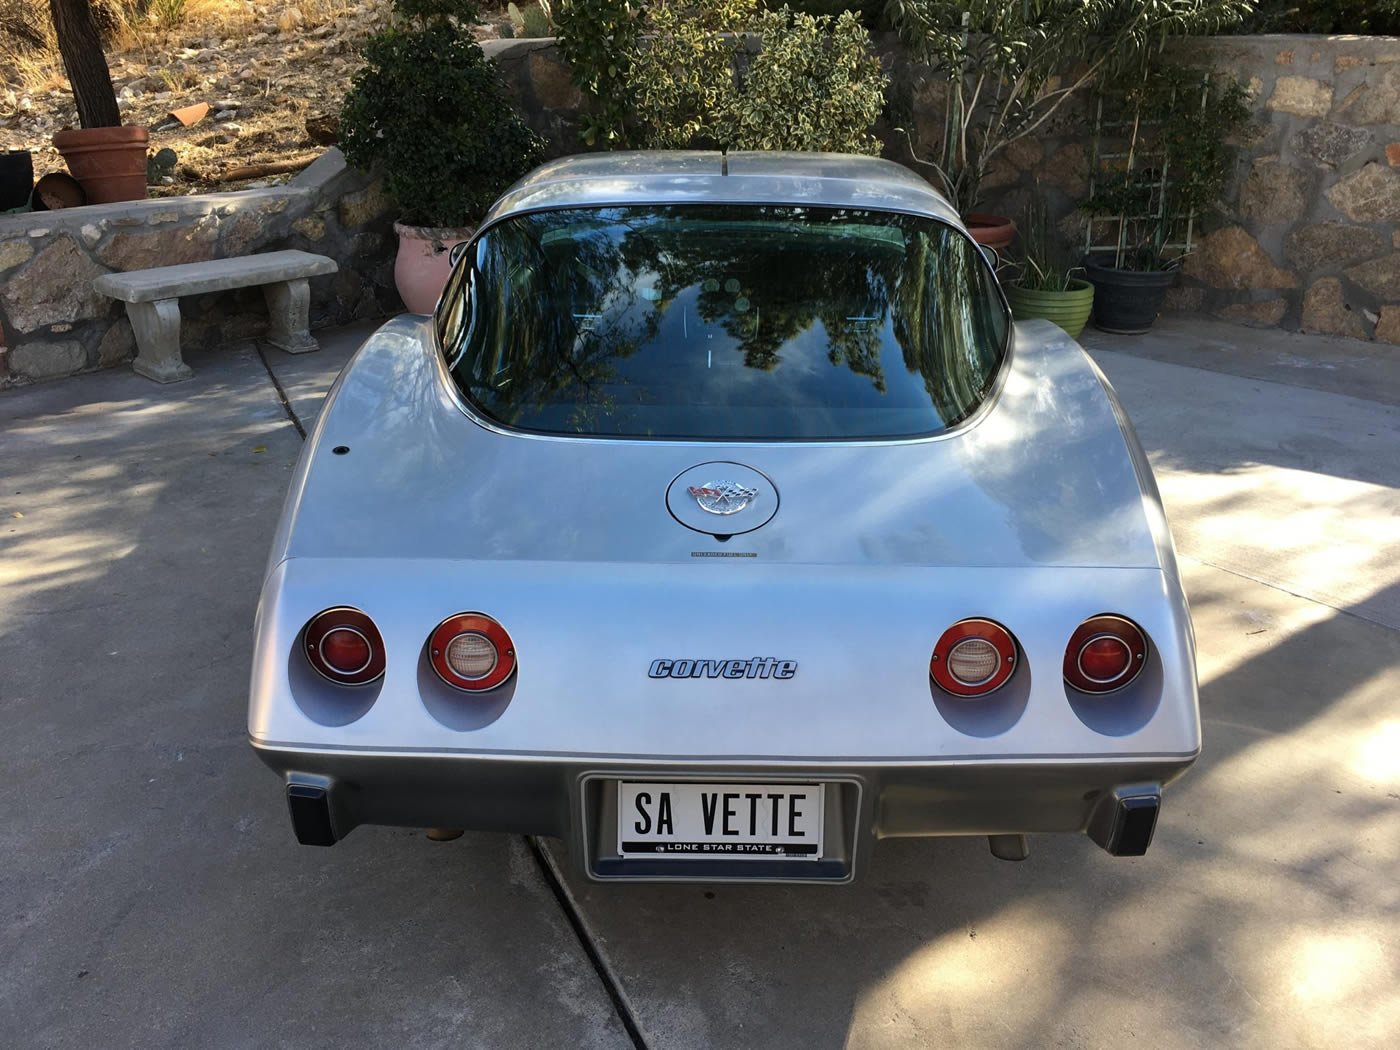 1978 Corvette 25th Anniversary Edition